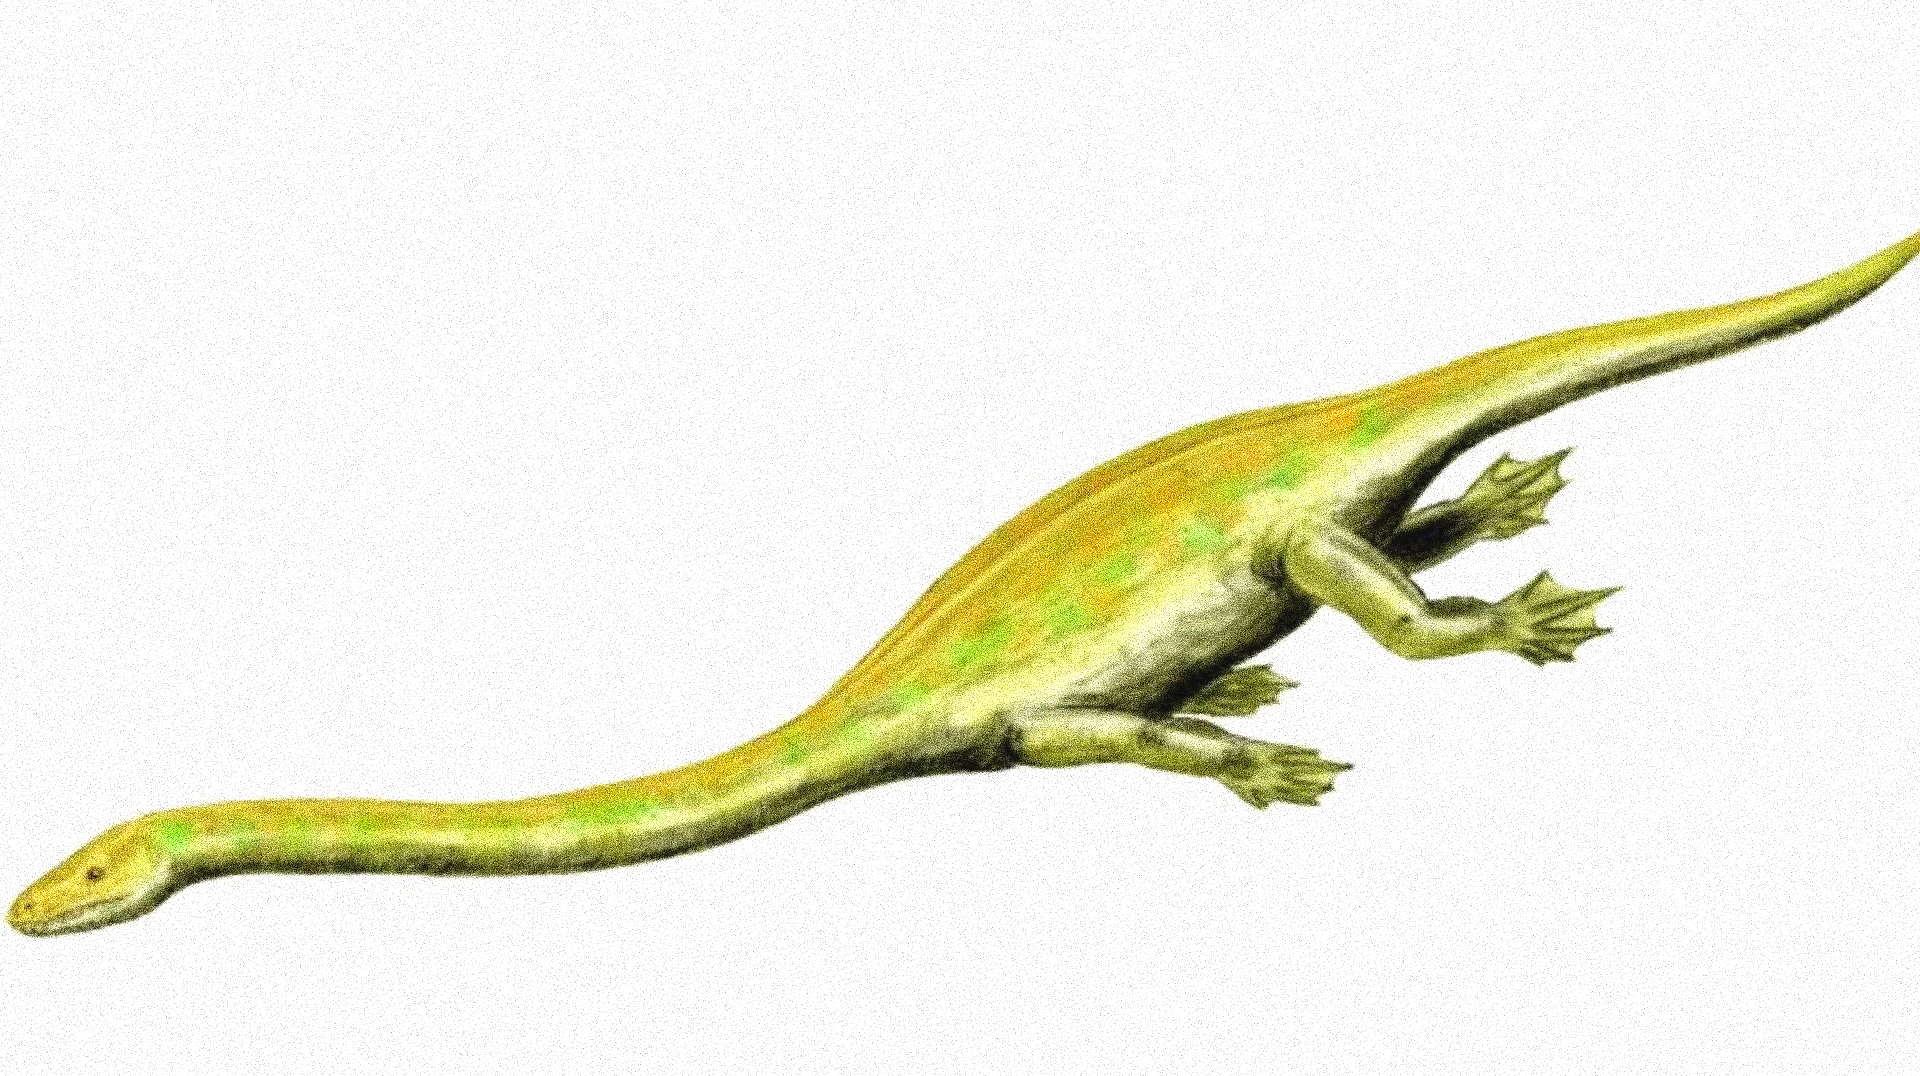 De la familia de los Dinocephalosaurus pero diferente